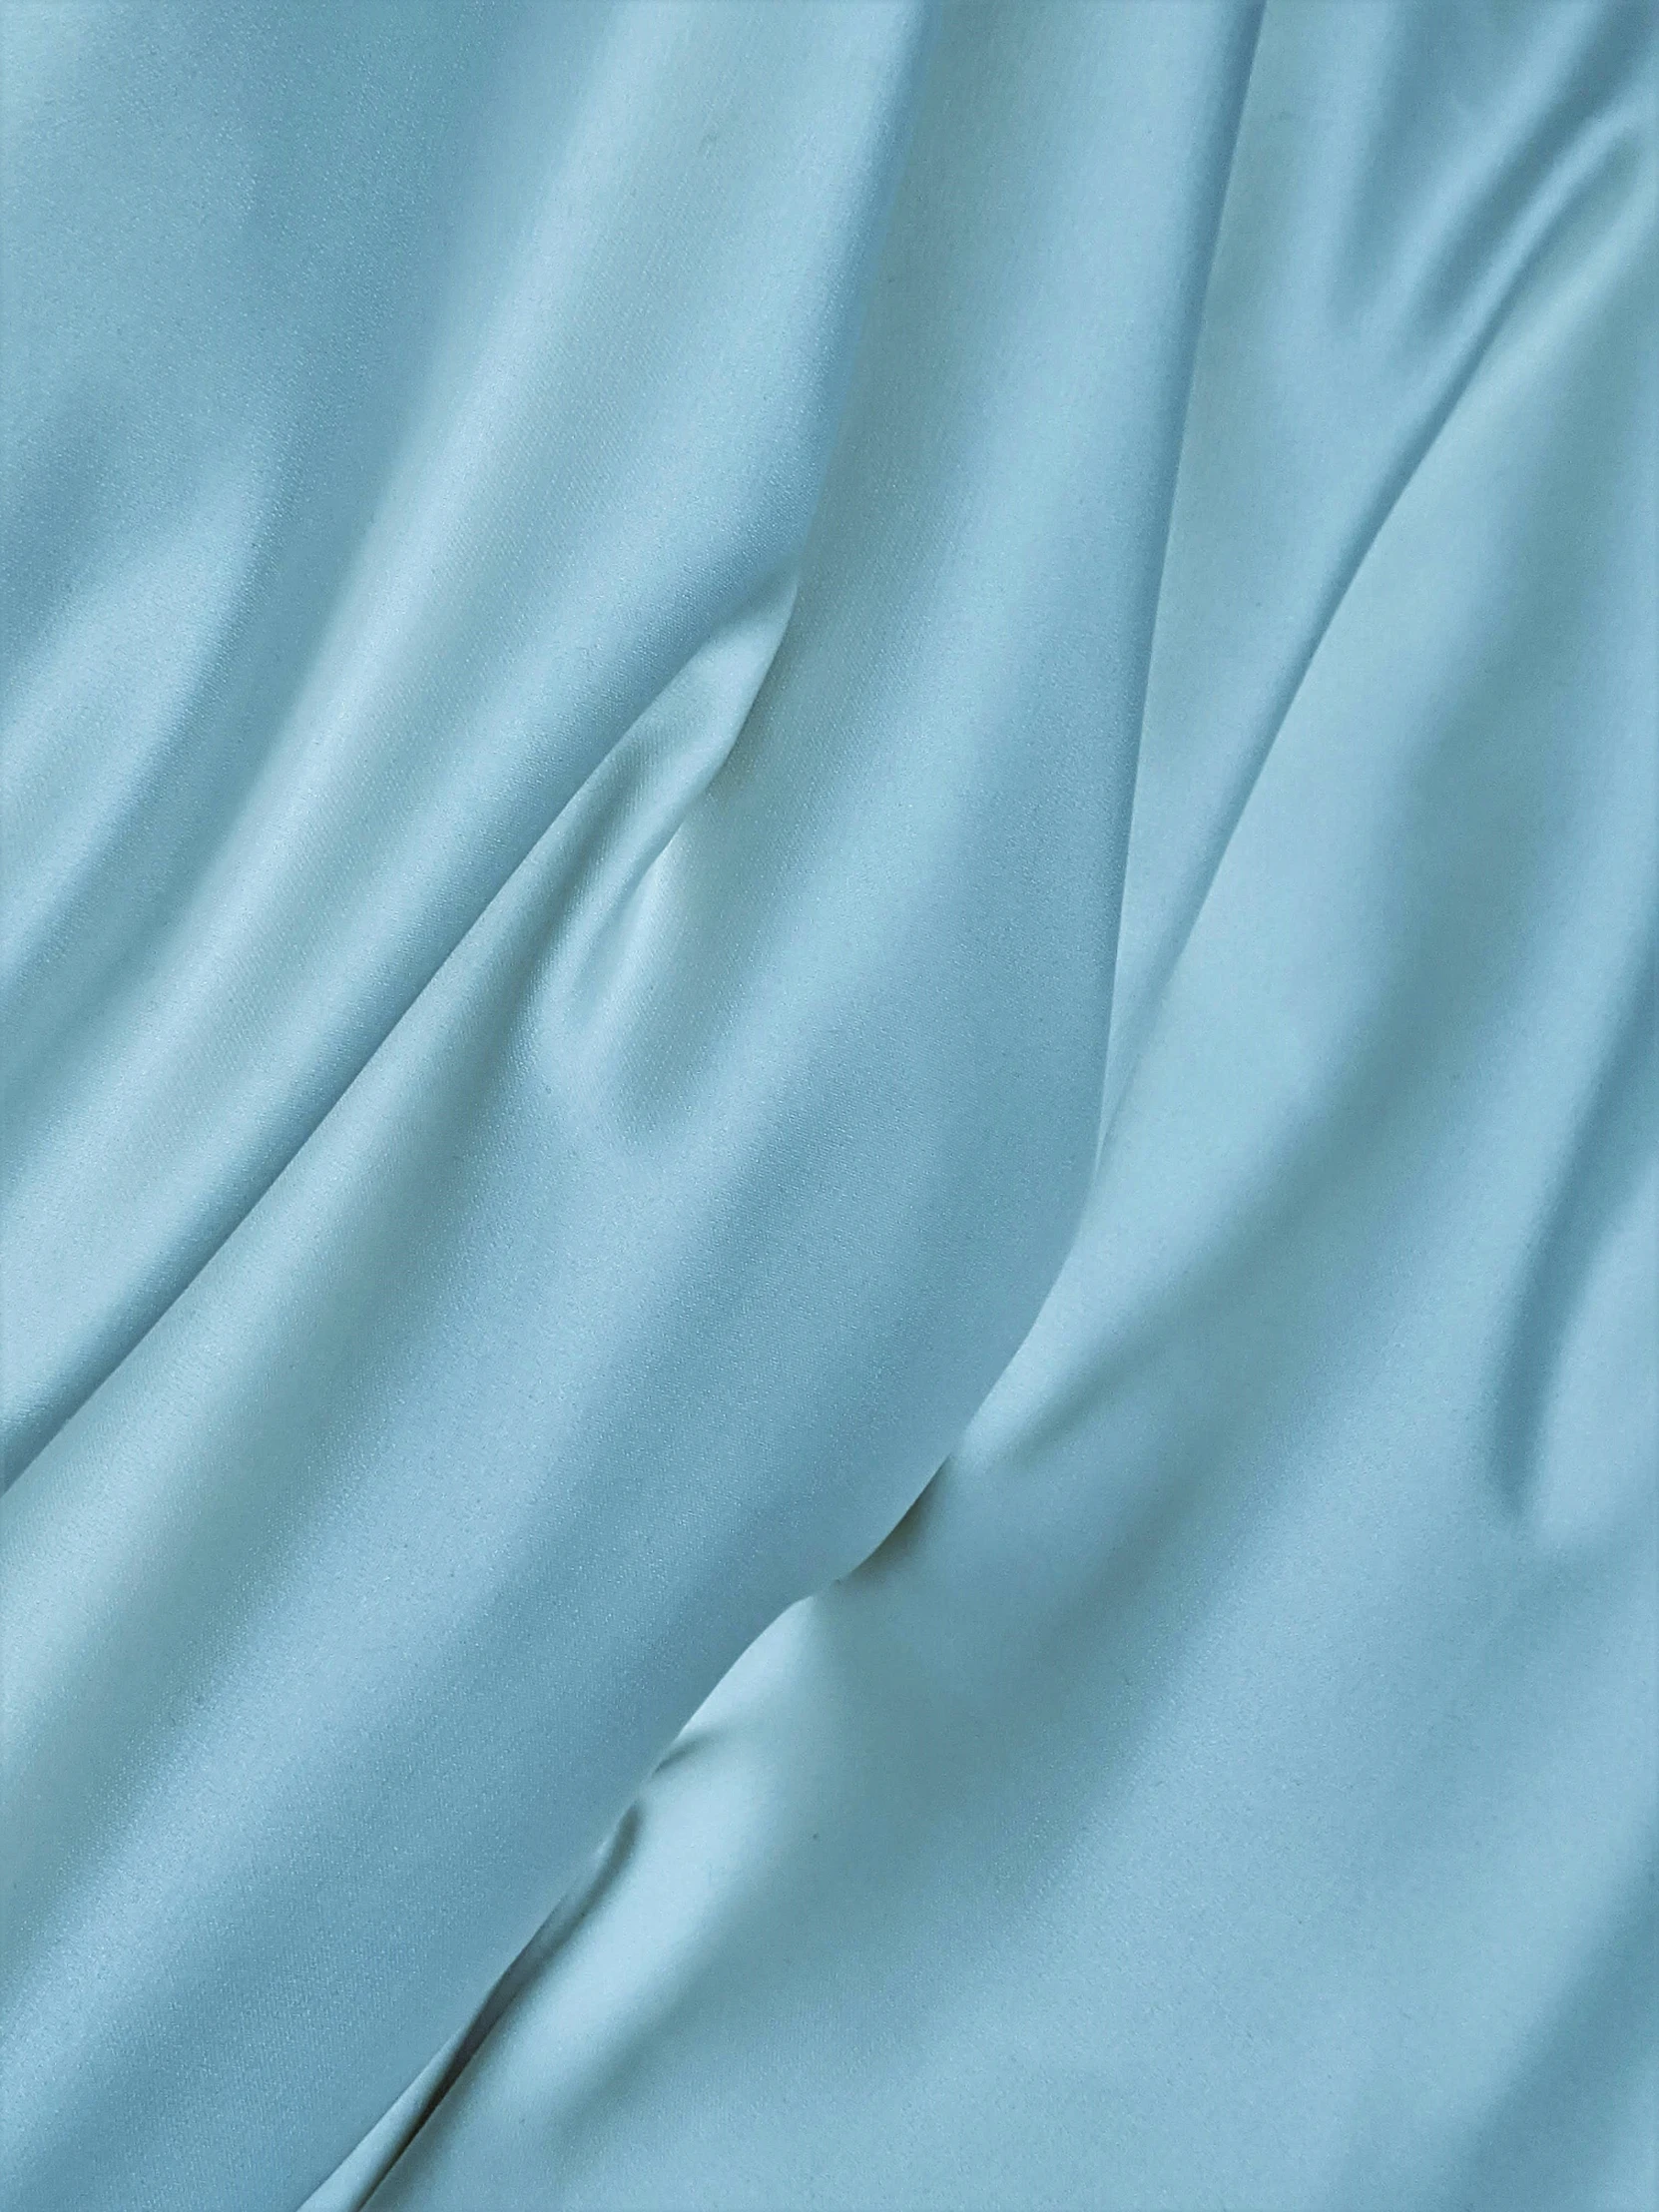 a close up of a soft blue fabric